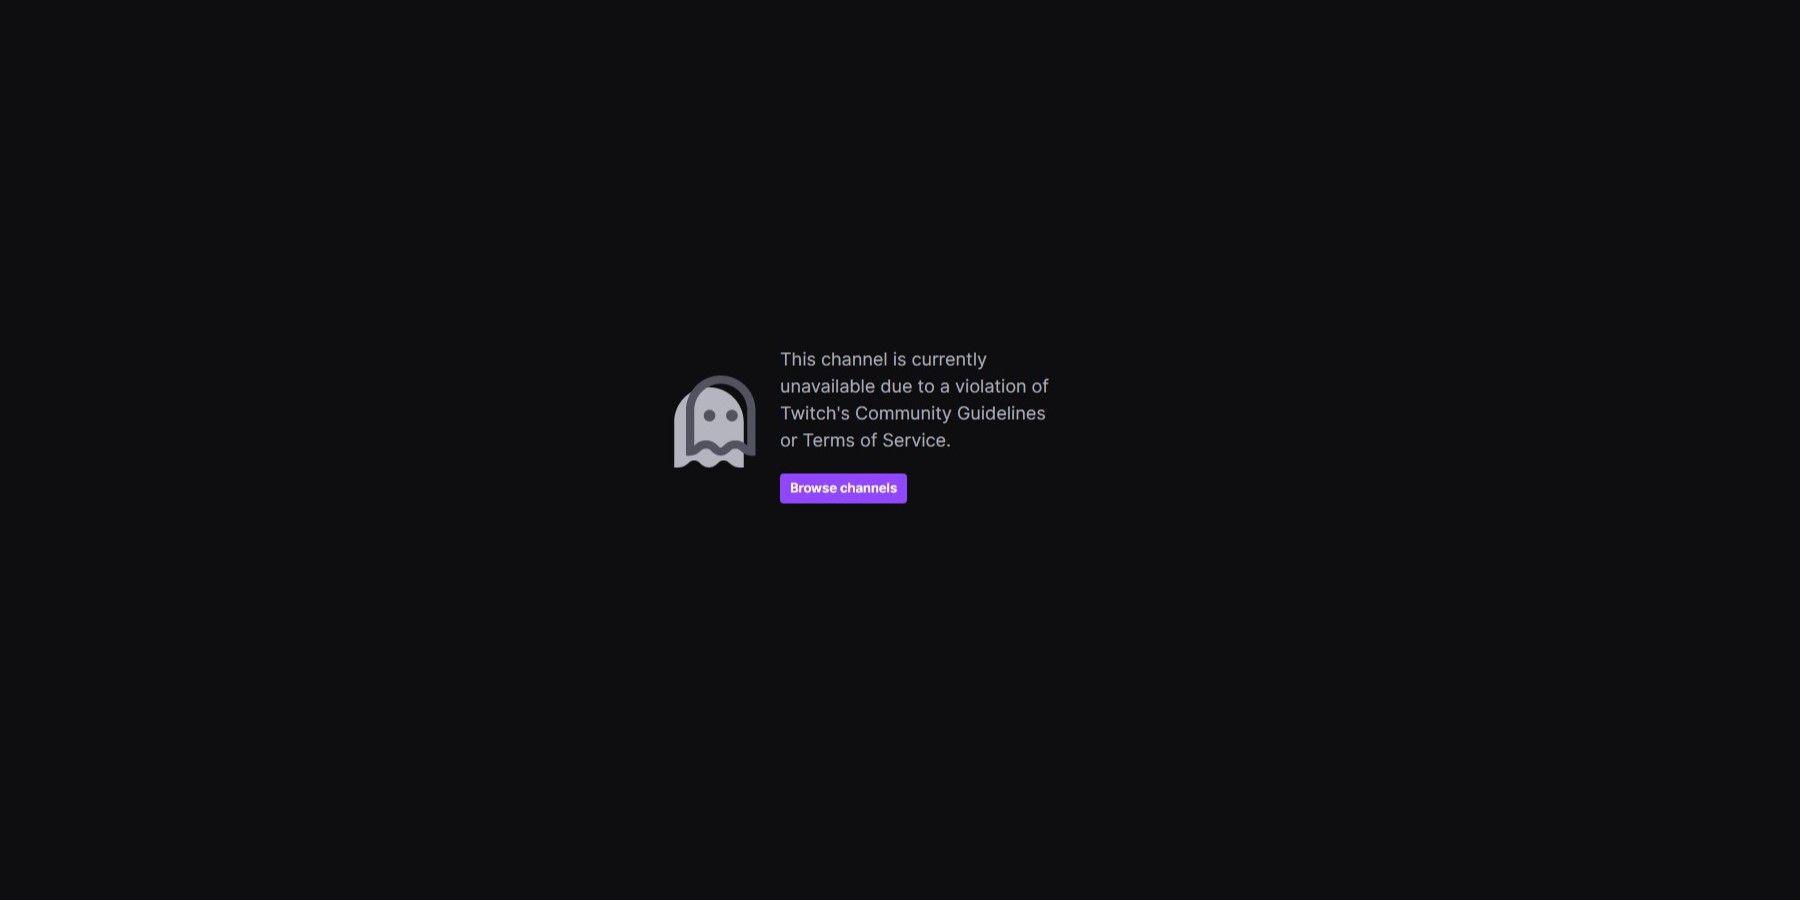 Streamer Sliker controverso banido permanentemente do Twitch